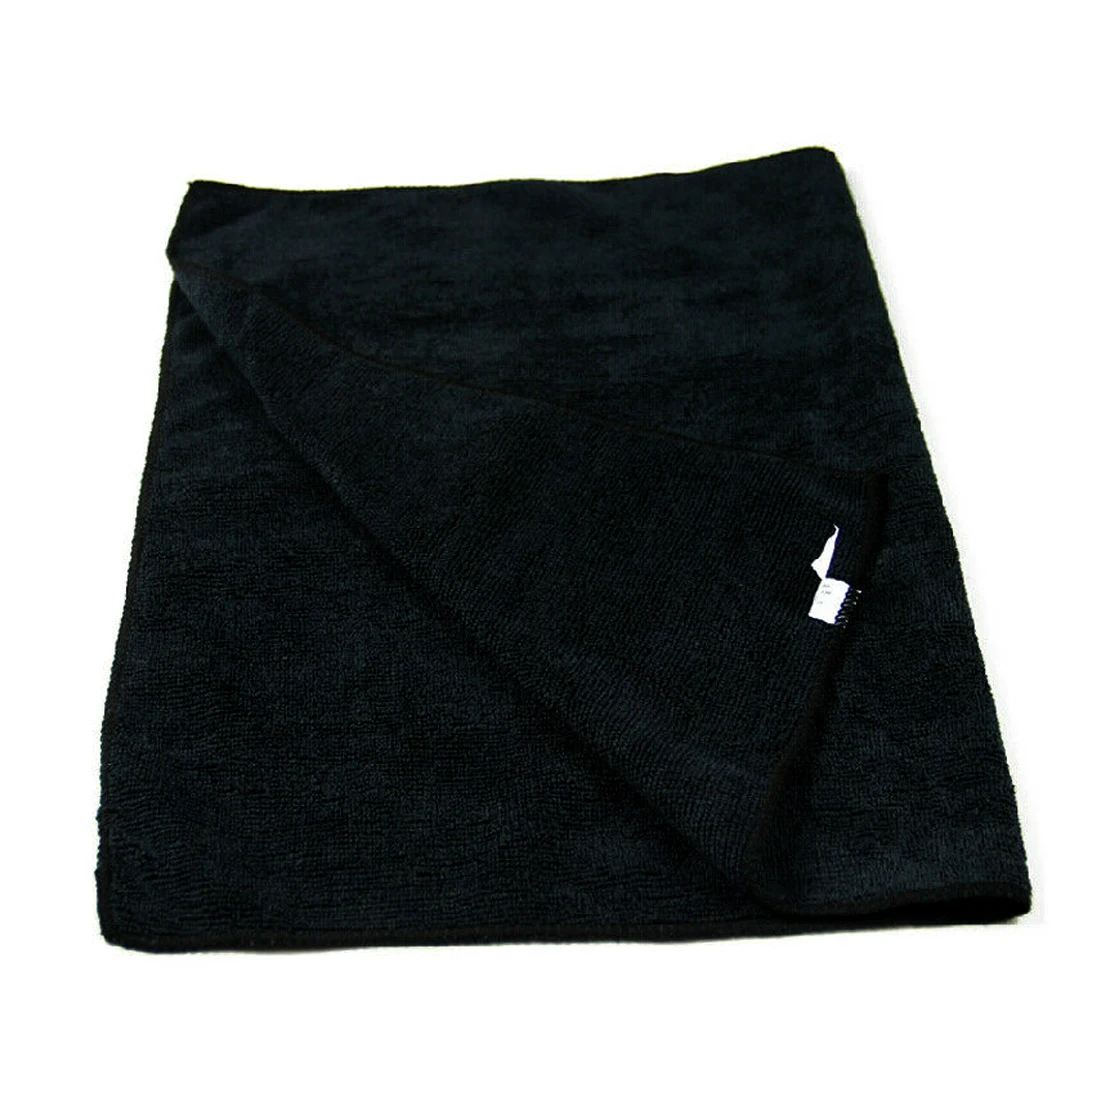 Letaosk 10 Stks/set Black Microfiber Doek Handdoek Rag Voor Wassen Cleaning Drogen Polijsten Detaillering Venster Scherm 30x30cm